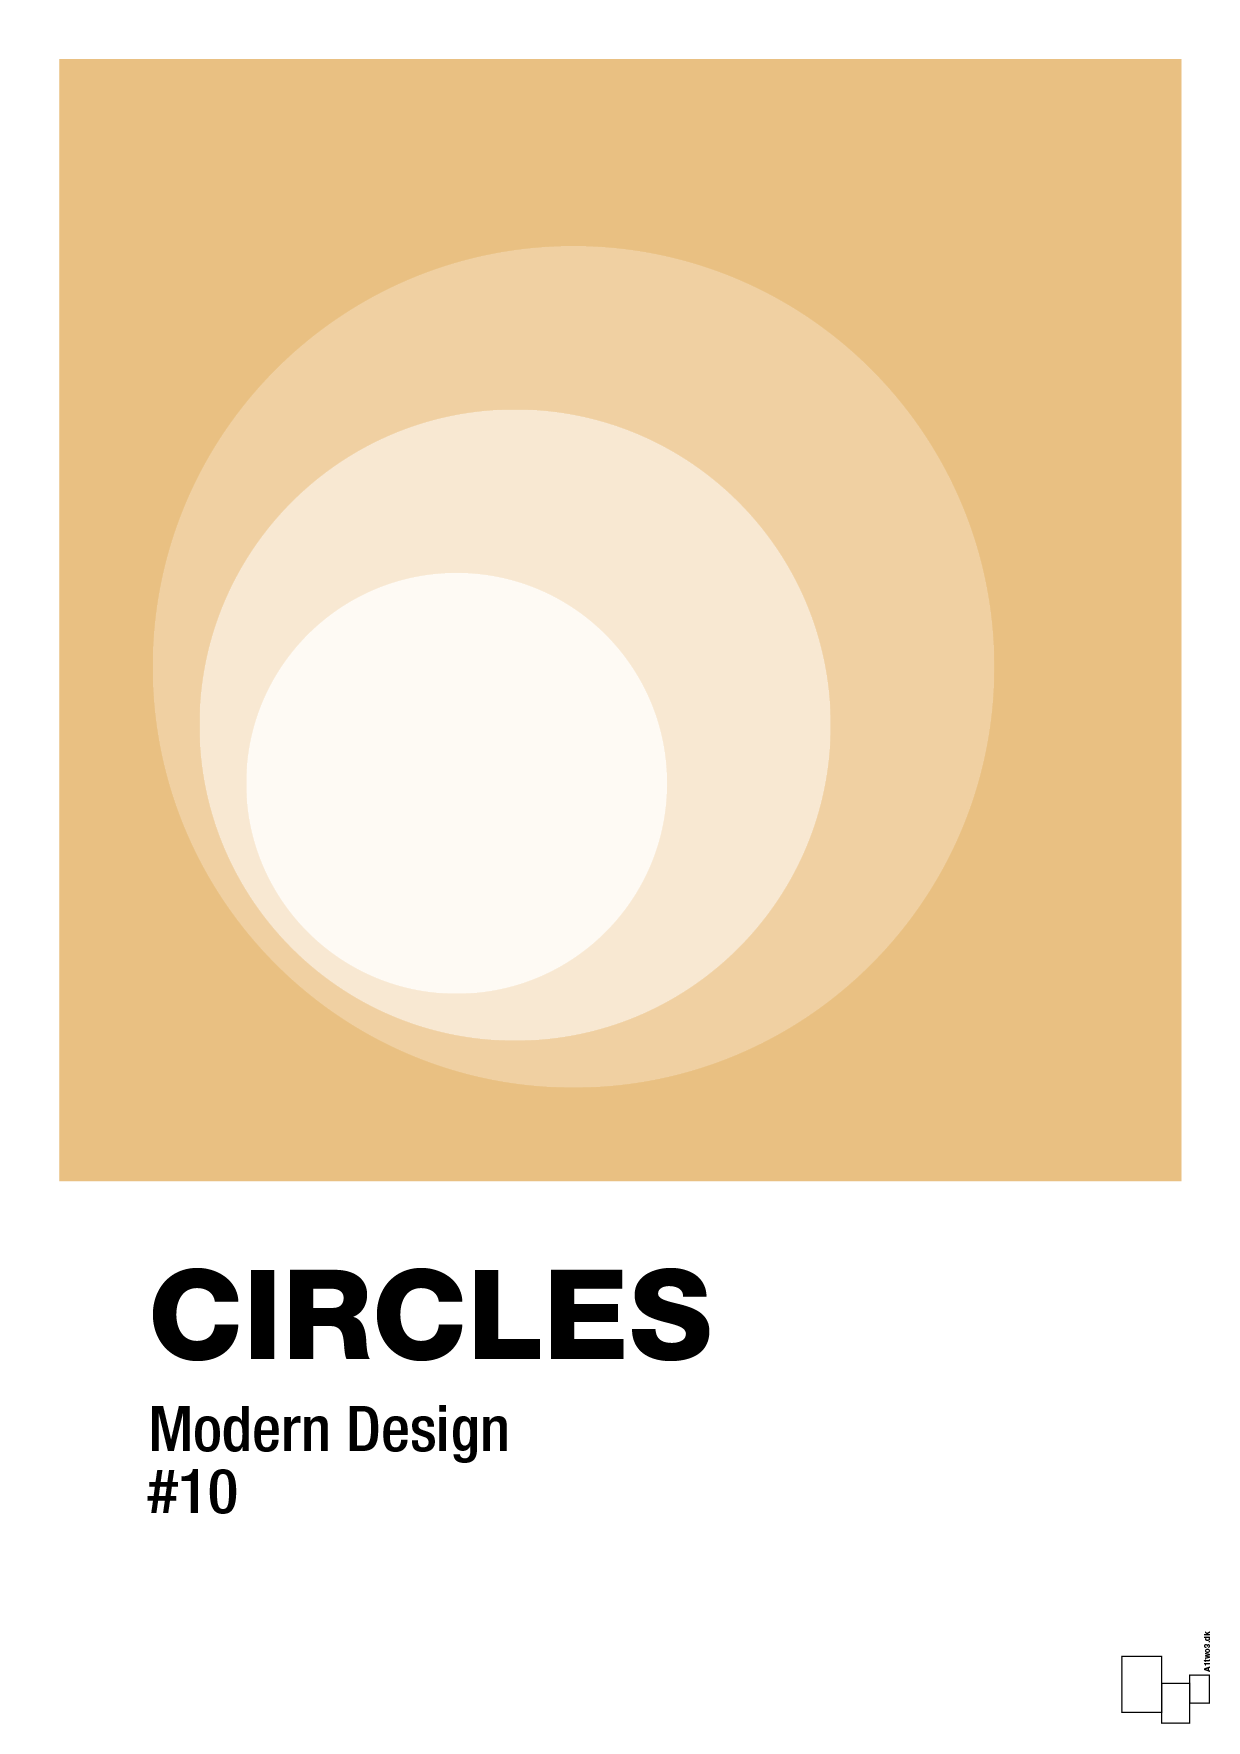 circles #10 - Plakat med Grafik i Charismatic